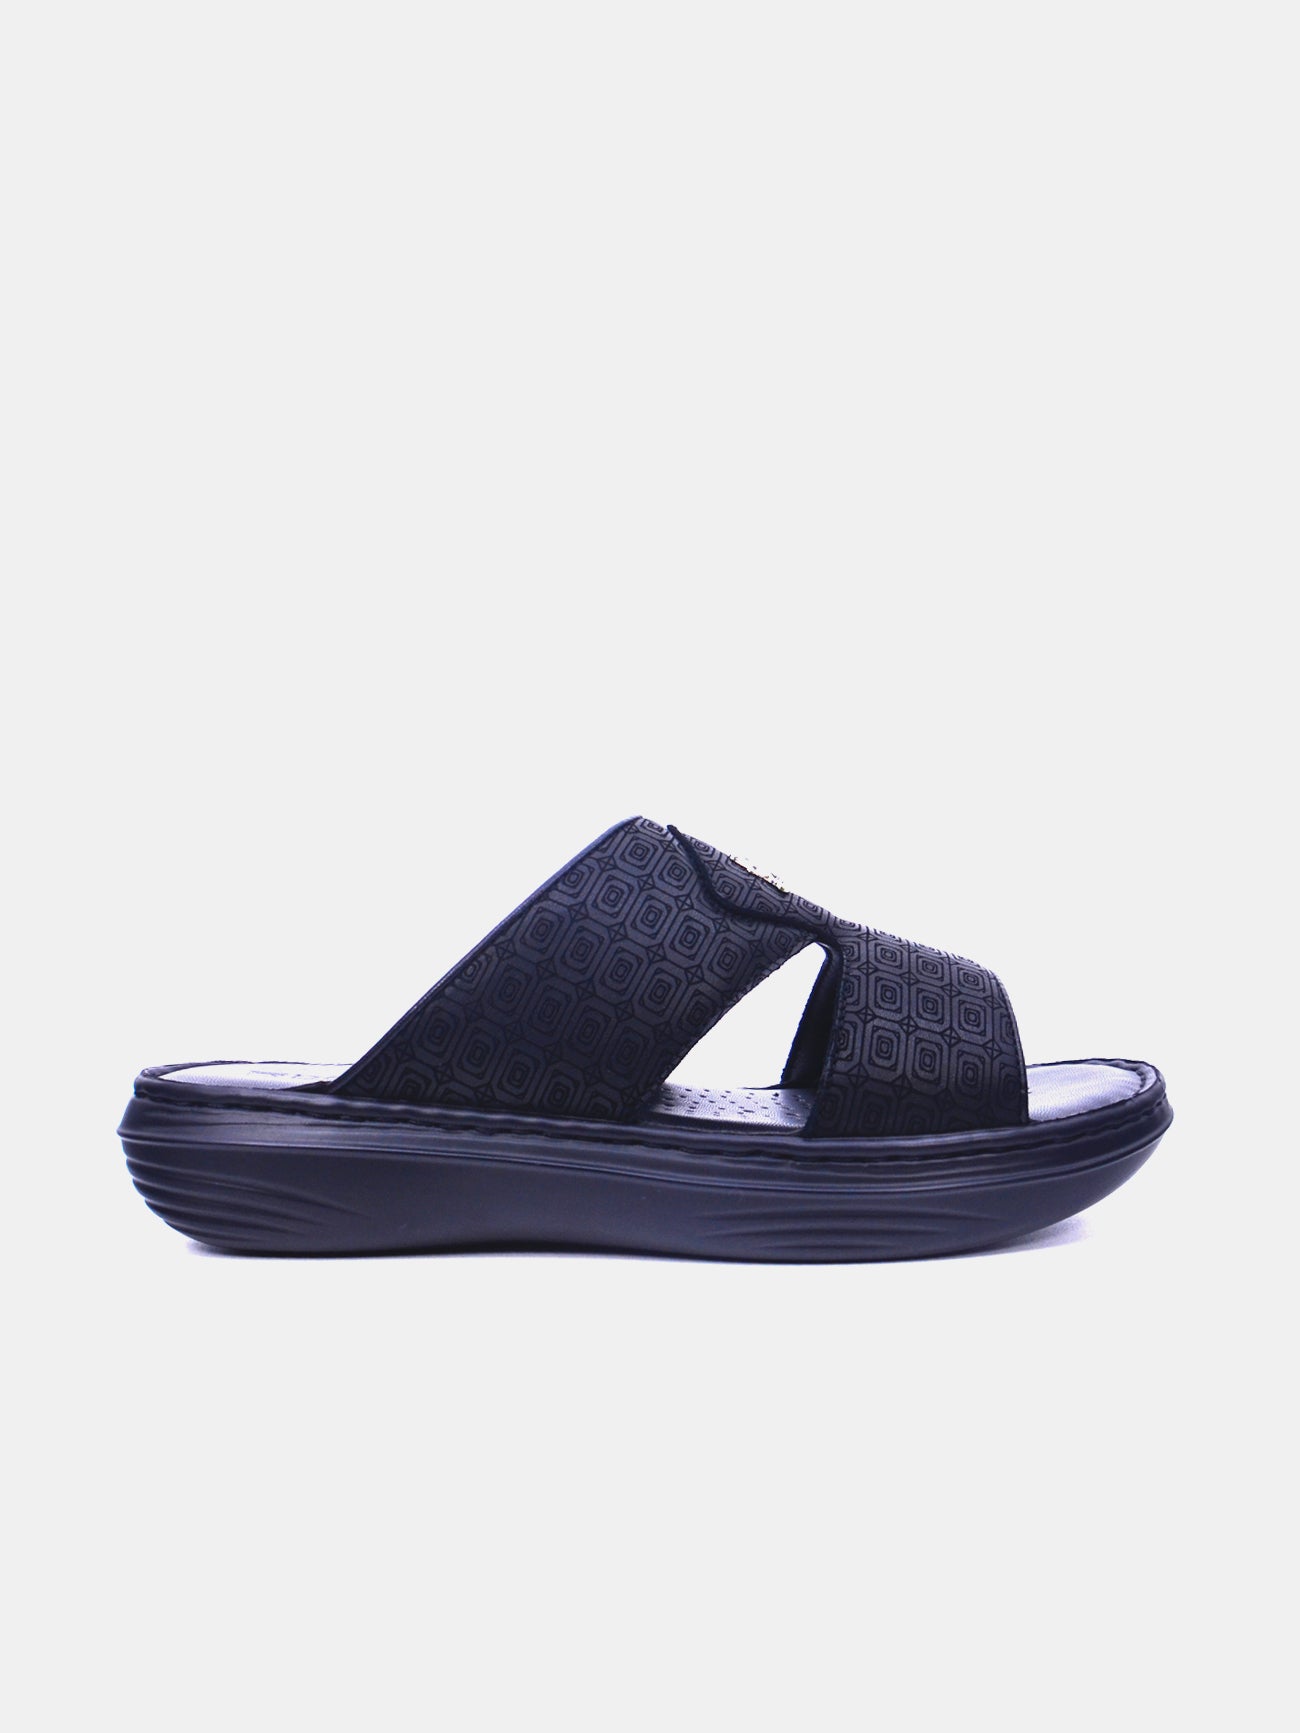 Barjeel Uno 21410-12 Men's Arabic Sandals #color_Black